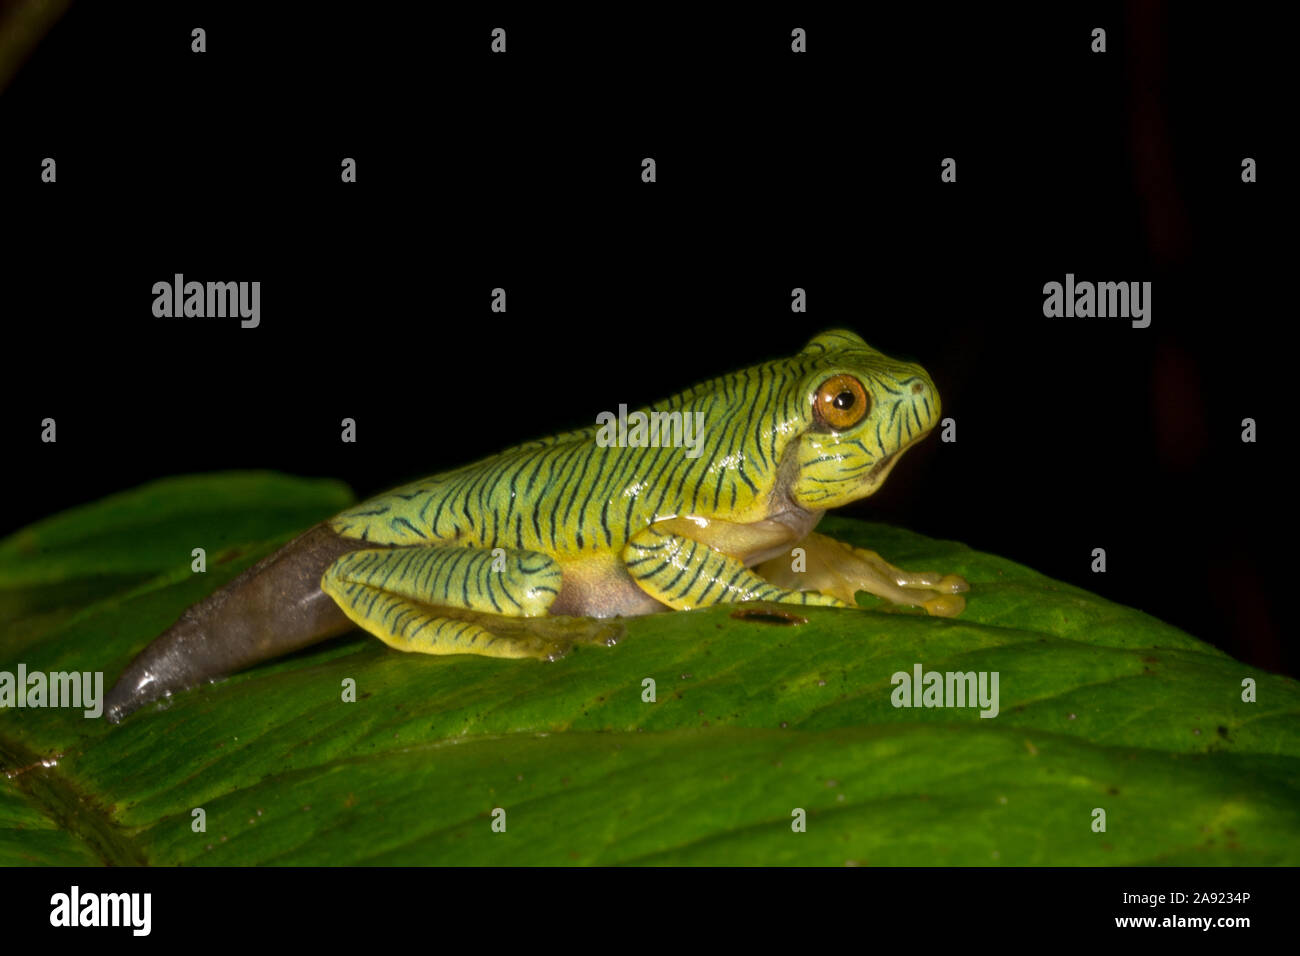 Tadpole of Rhacophorus pseudomalabaricus or gliding frog seen at Munnar,Kerala,India Stock Photo